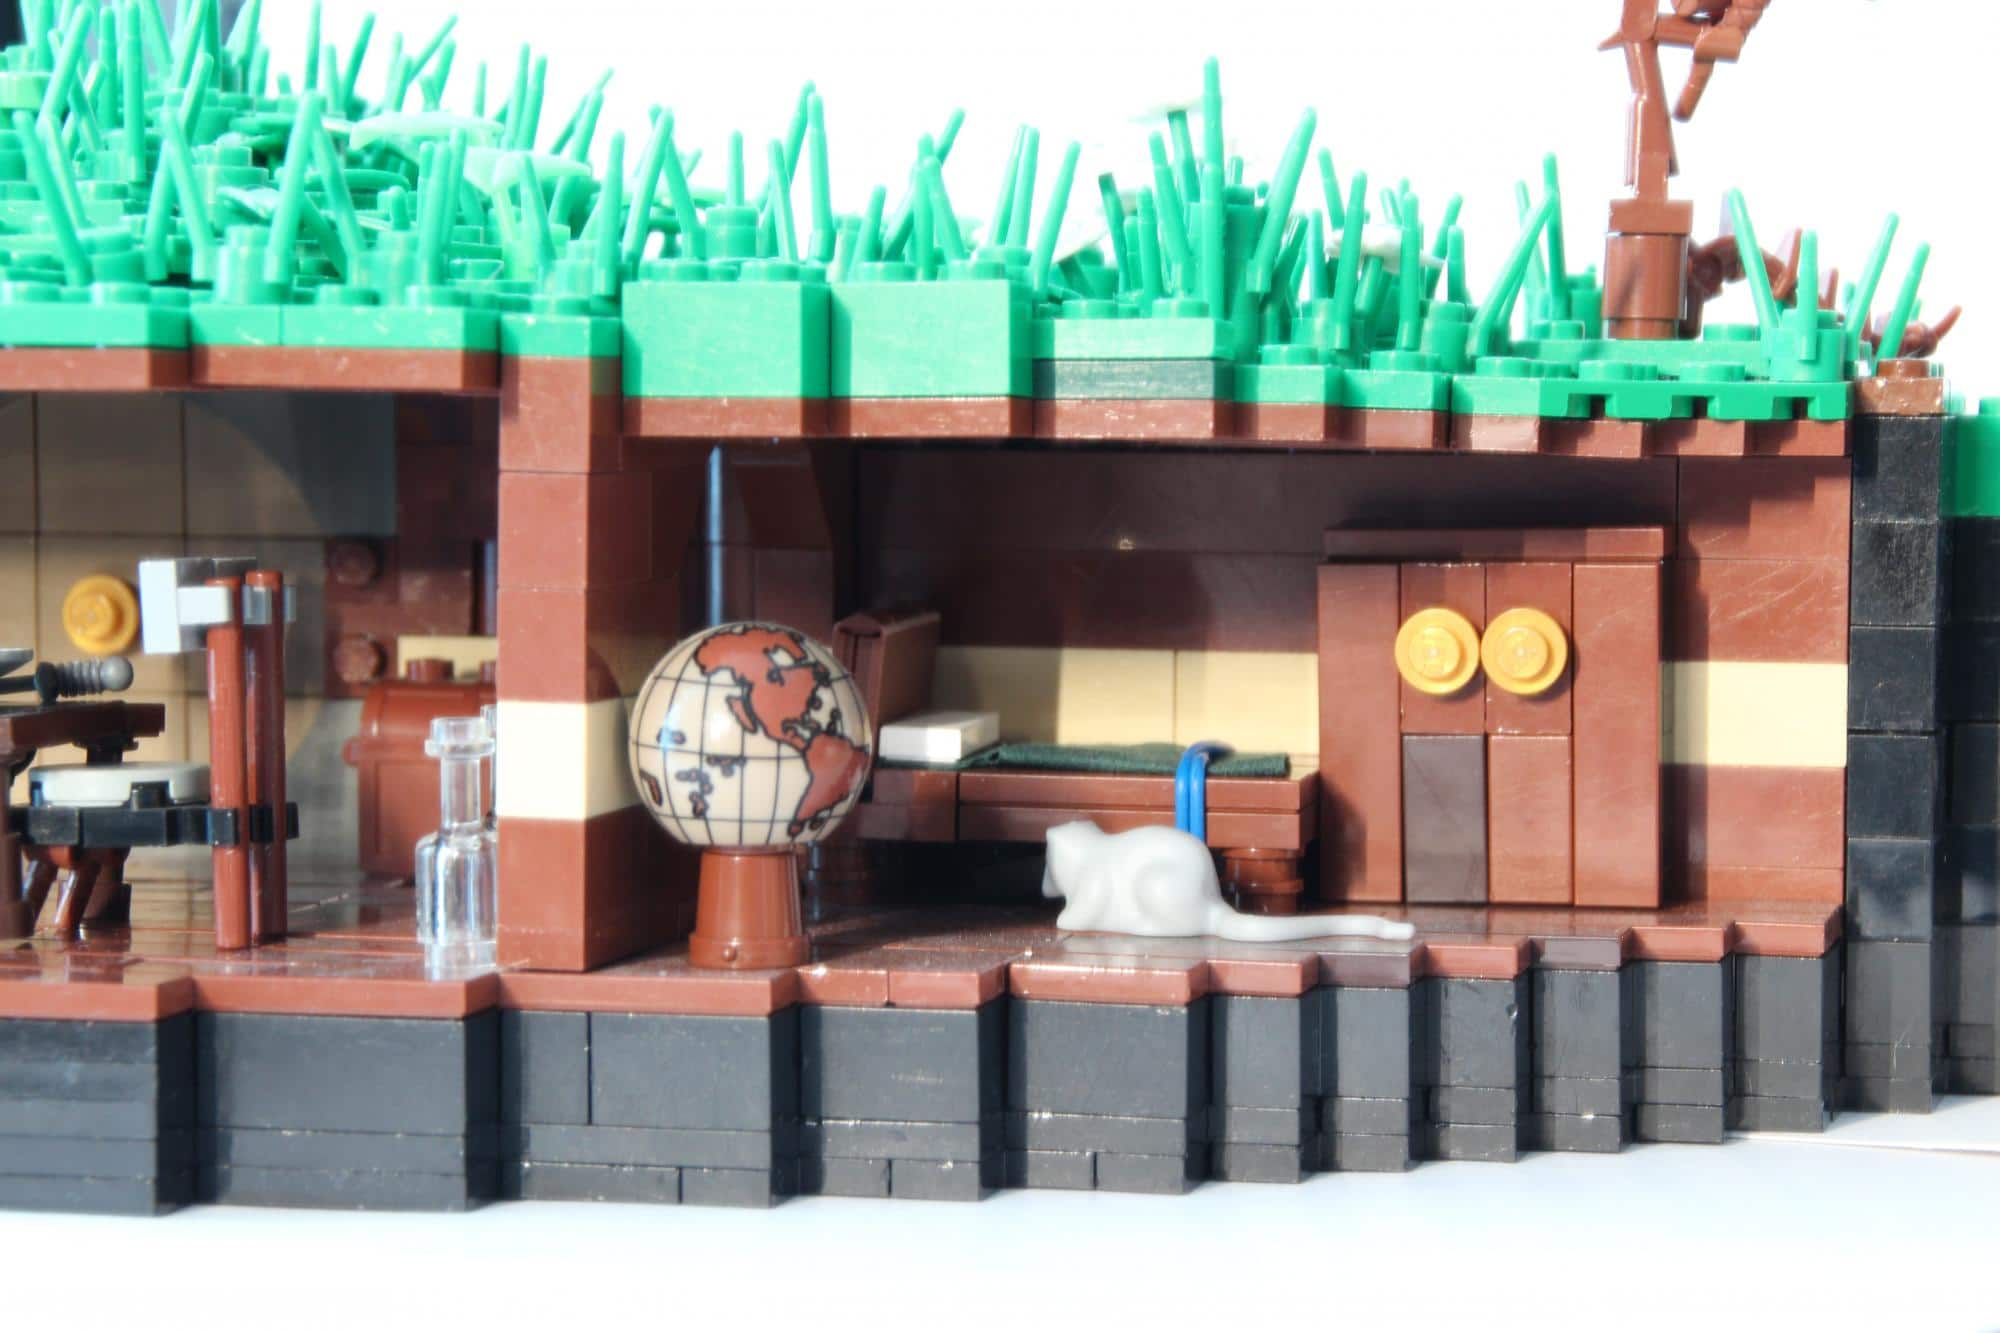 hobbit-hole-lego-build